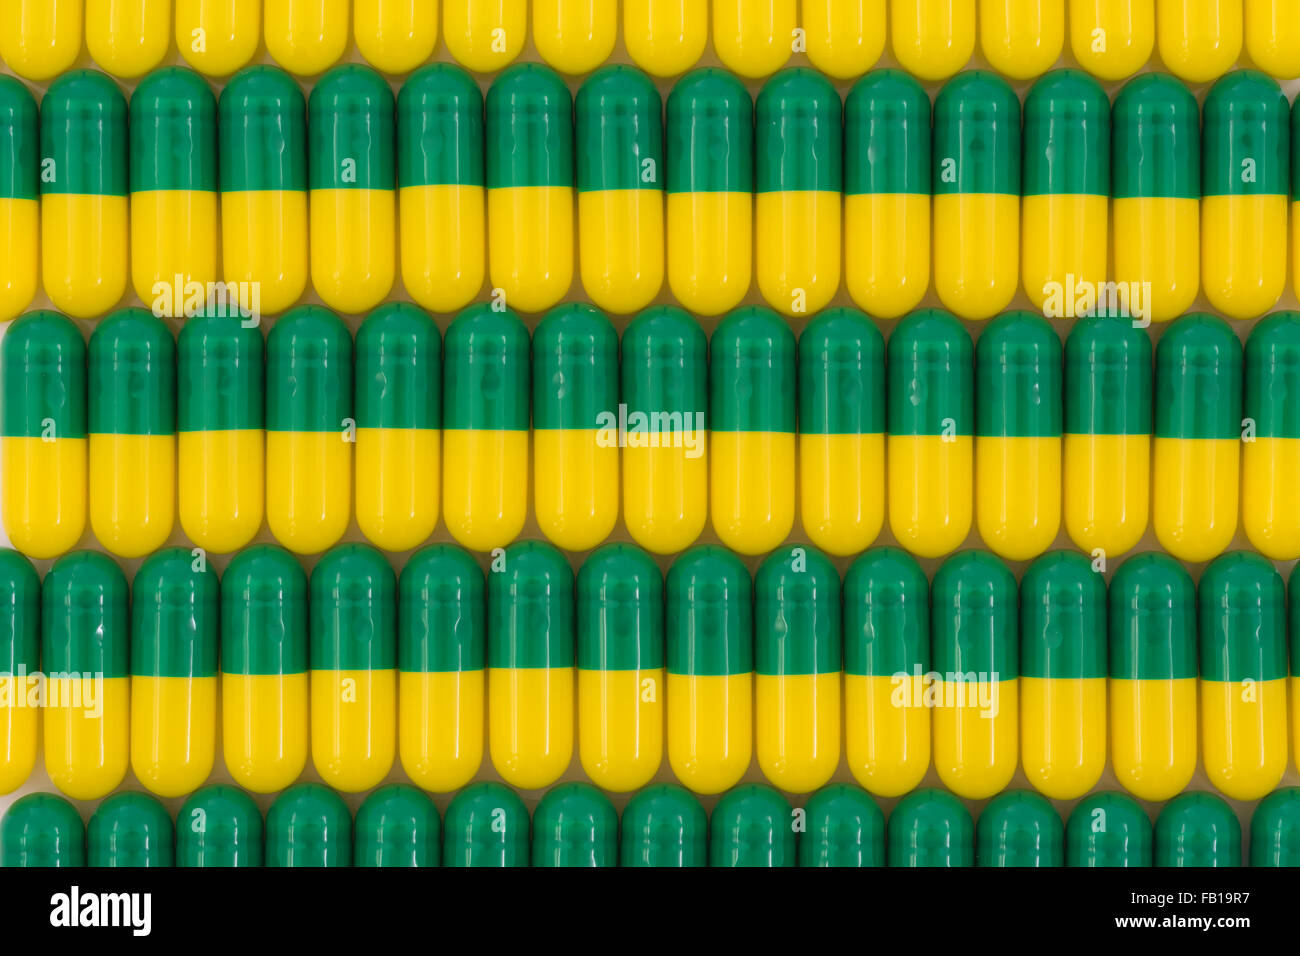 Primer plano de pastillas - forma de cápsula hecha de gelatina. Pastillas verdes / amarillas. Metáfora tomando a las compañías farmacéuticas estadounidenses sobre los altos precios de los medicamentos, ensayos de drogas. Foto de stock